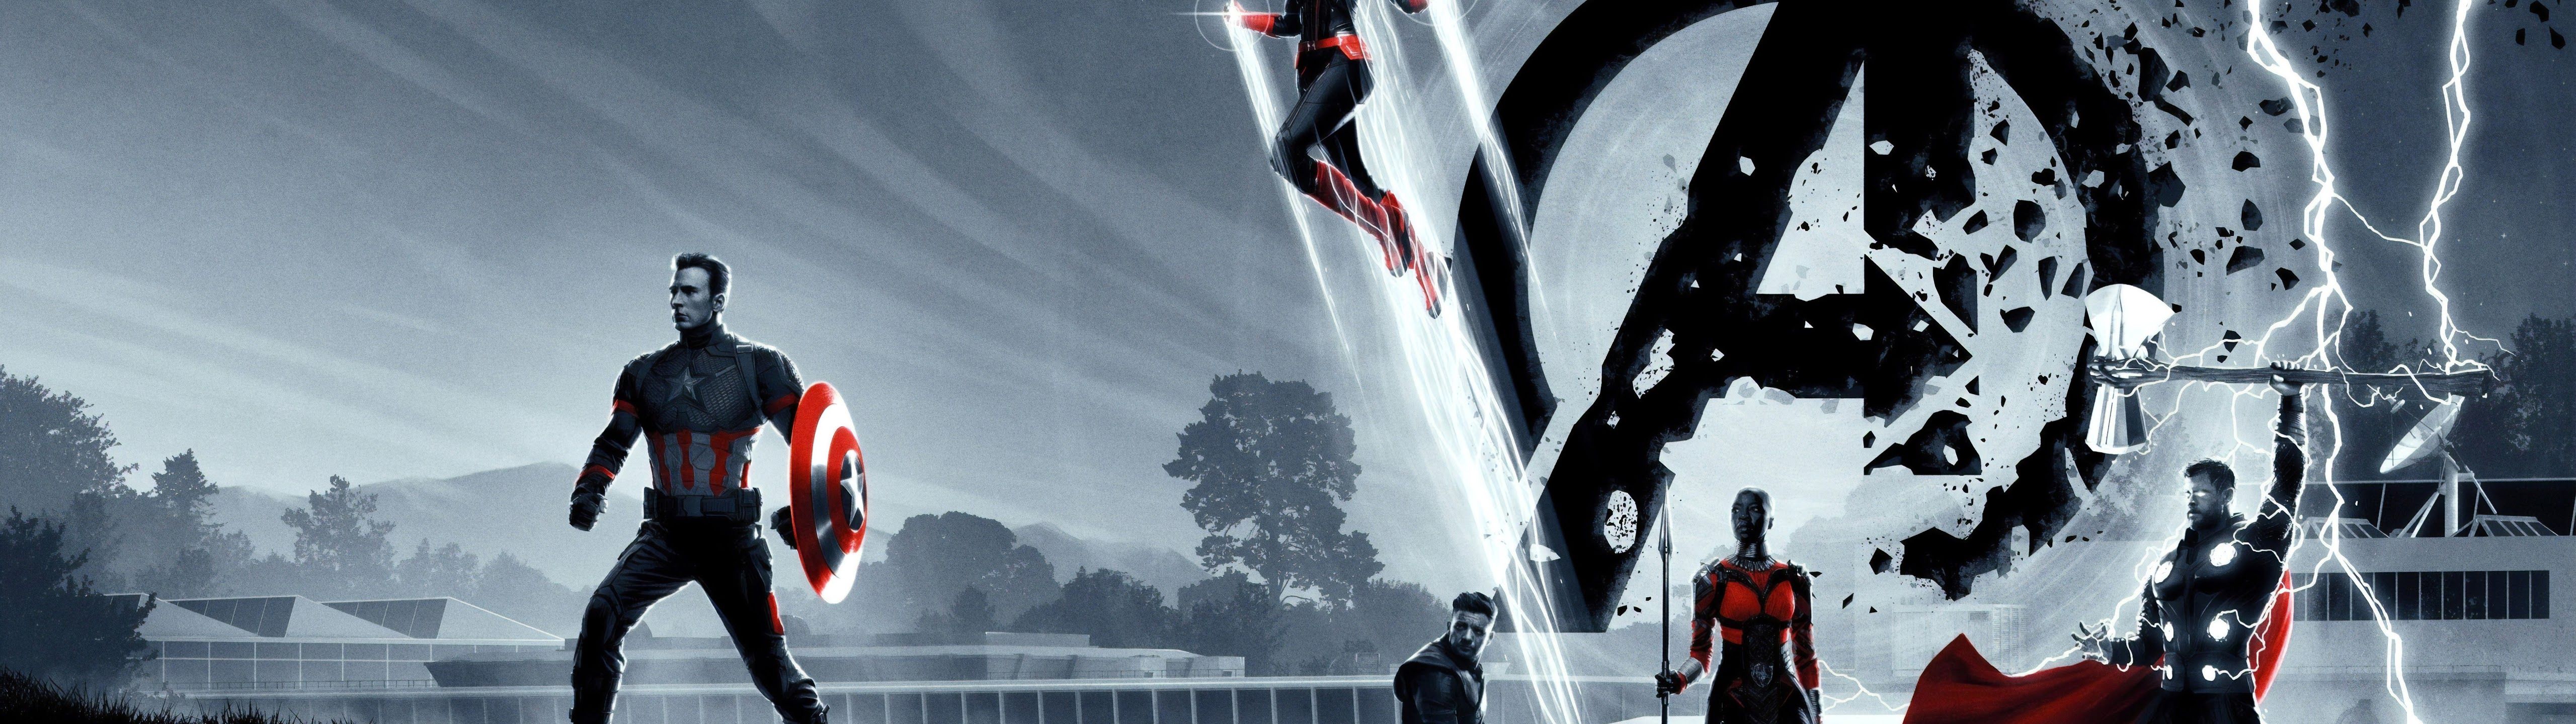 Avengers: Endgame Captain America Captain Marvel 8K Wallpaper